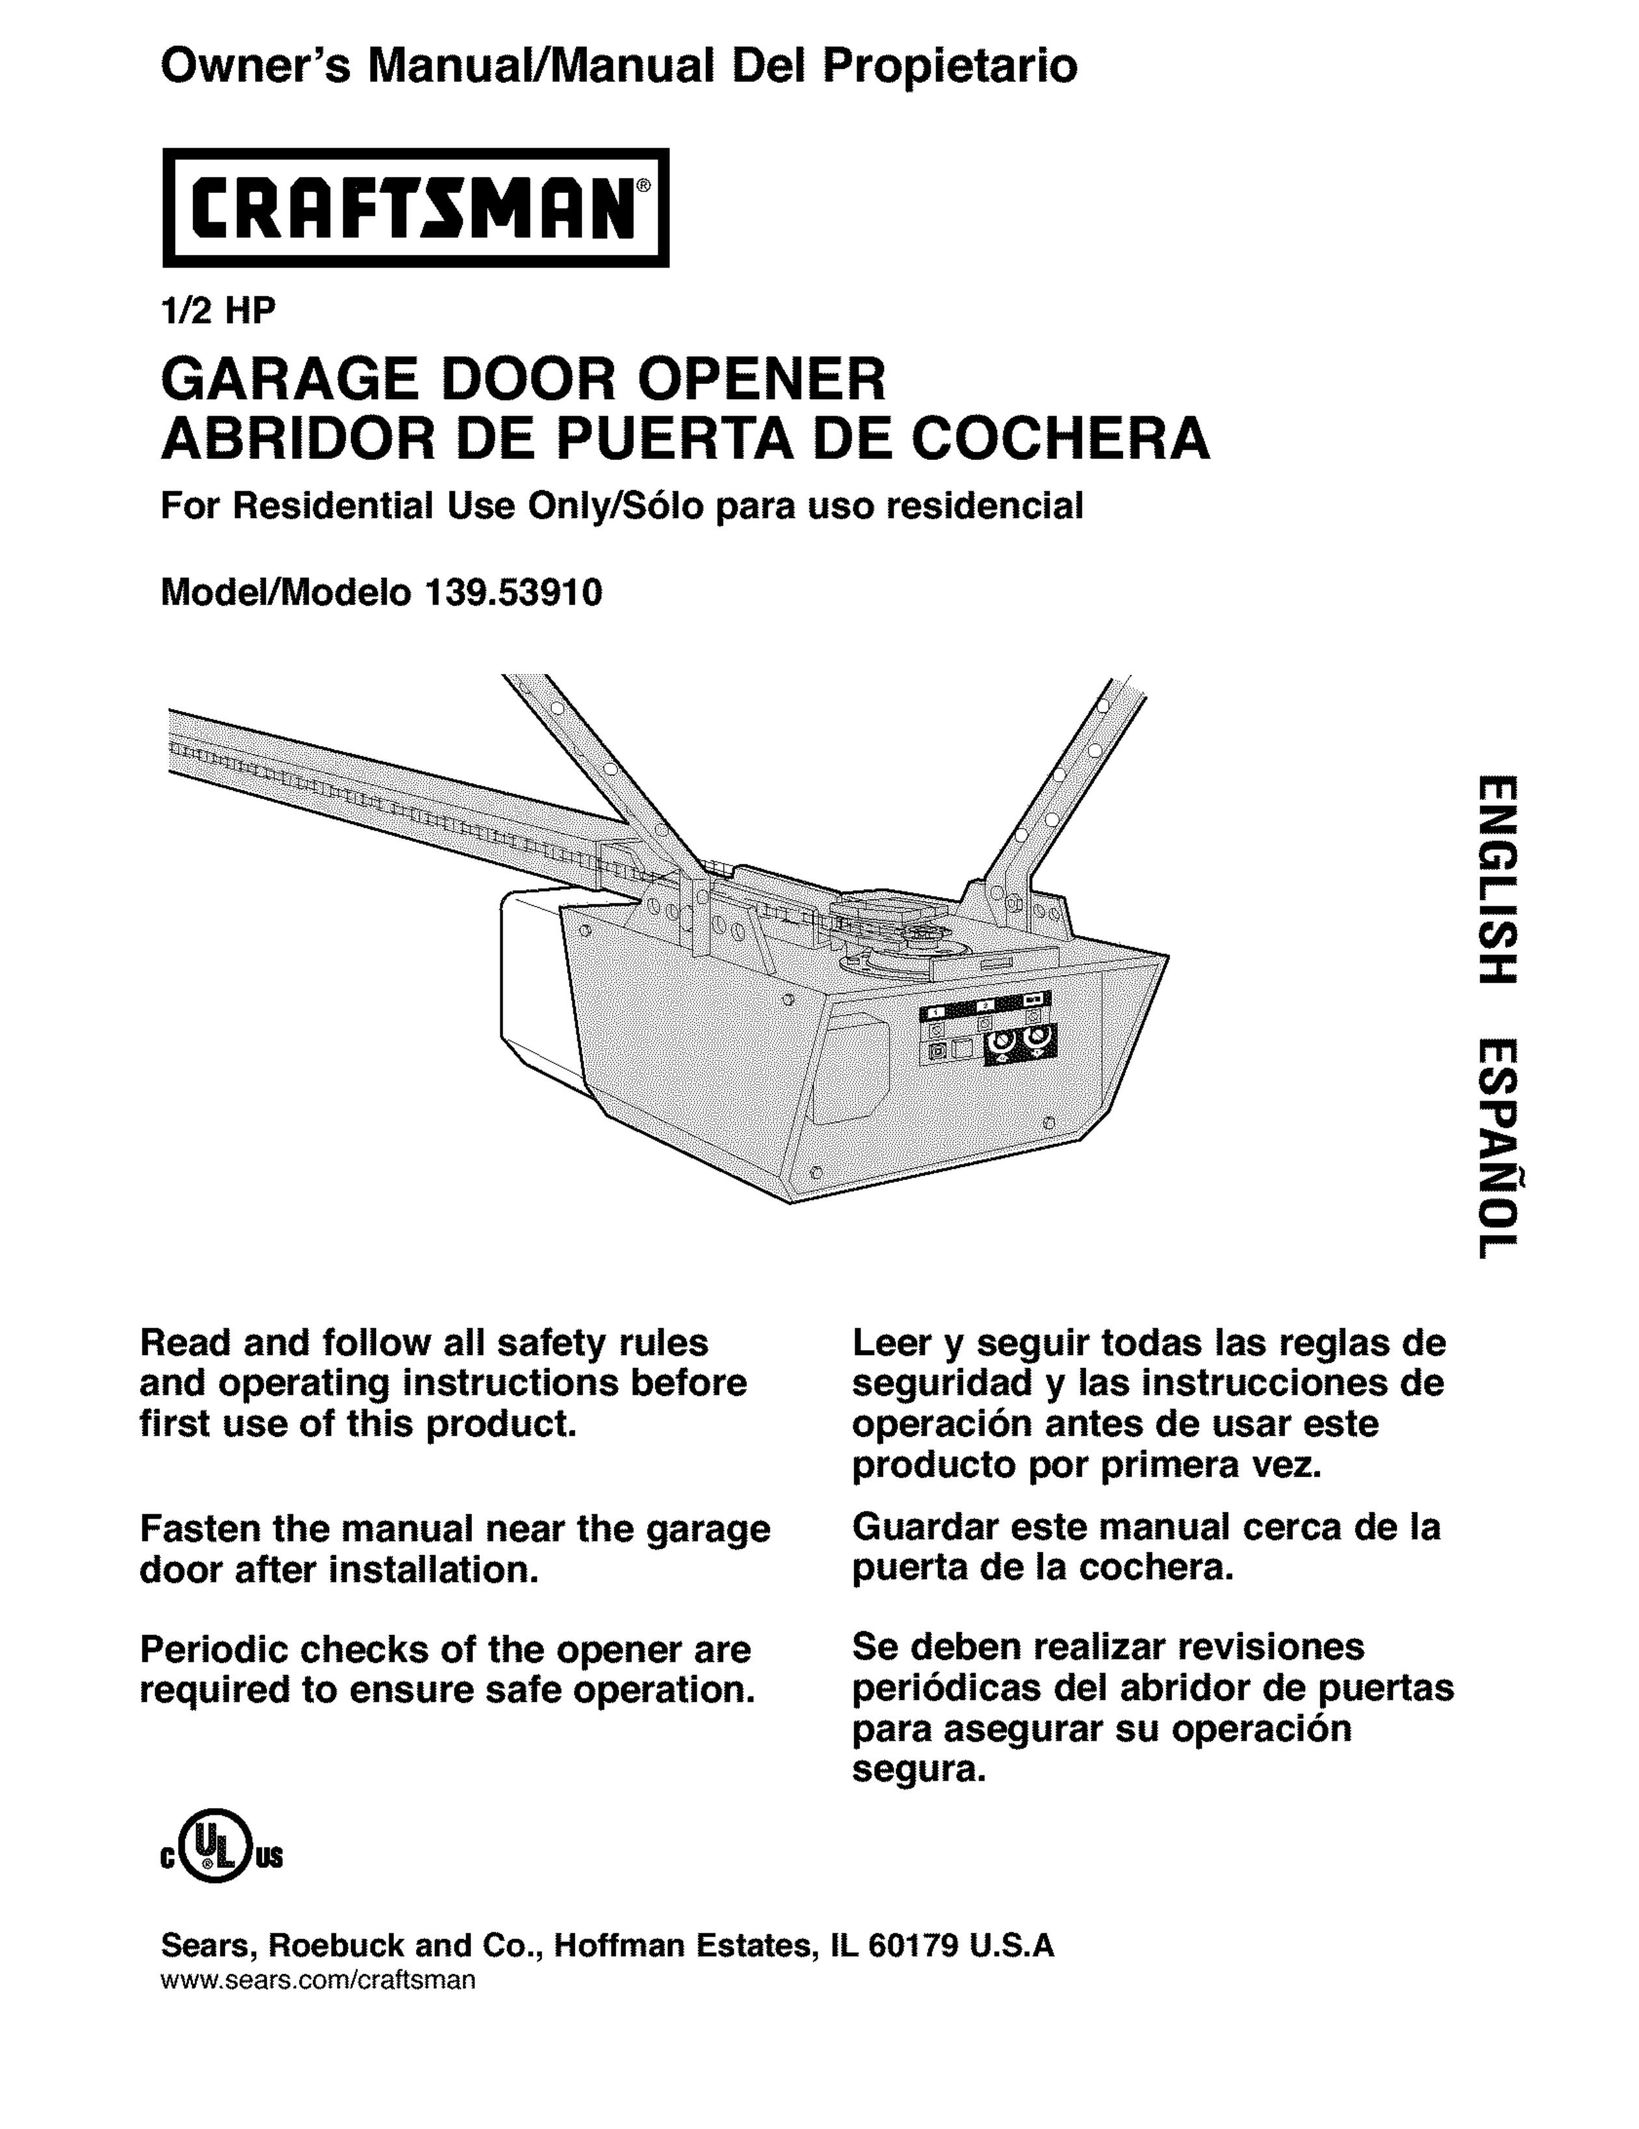 Craftsman 139.5391 Garage Door Opener User Manual